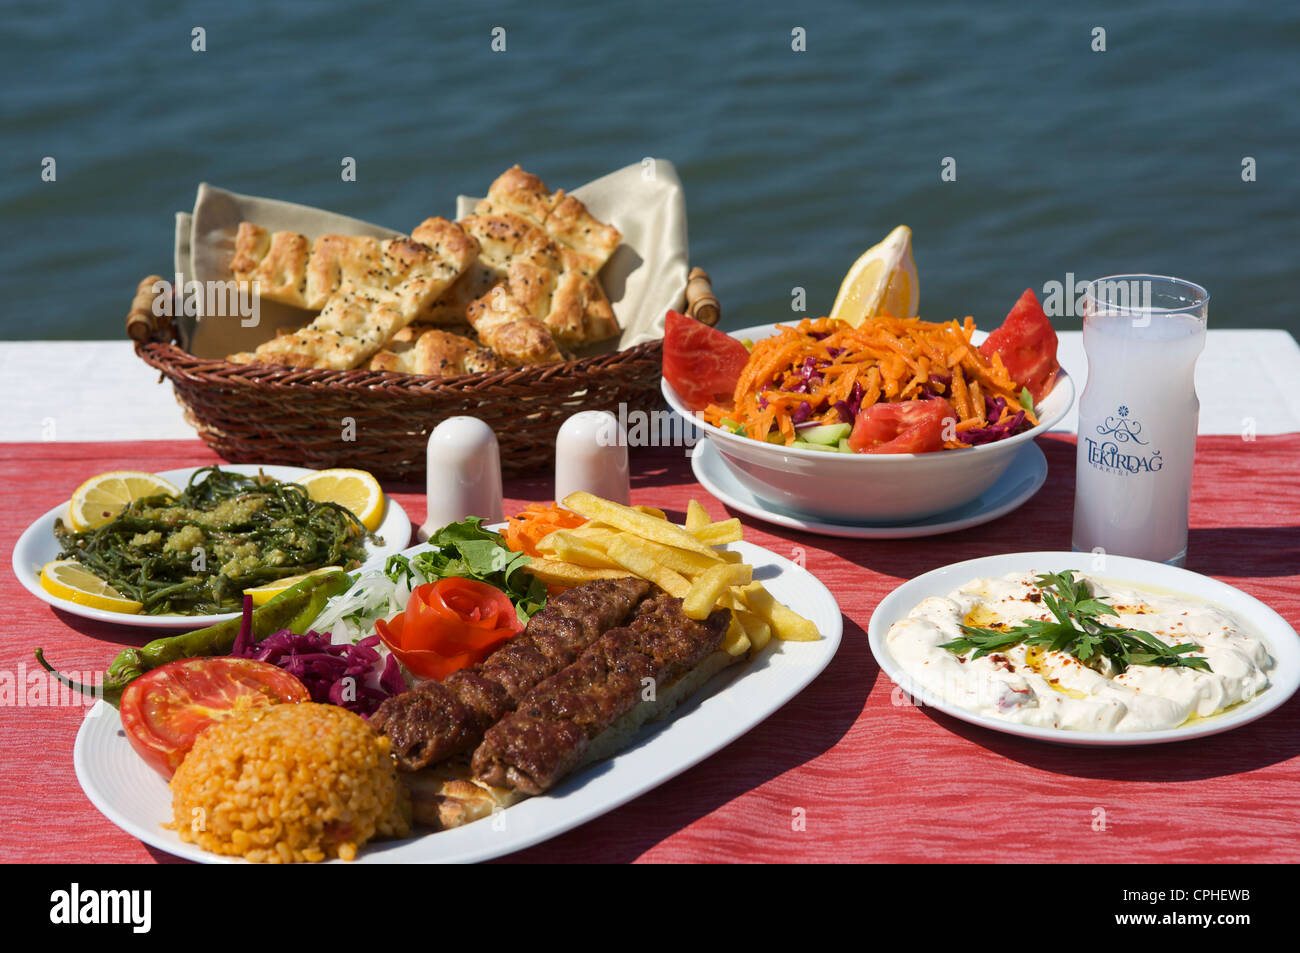 La Turquie, sur la mer Egée, la mer Égée Turque, Europe, European, Bodrum, Marmaris, nourriture, alimentation, alimentation, restaurant, restaurants, une Banque D'Images